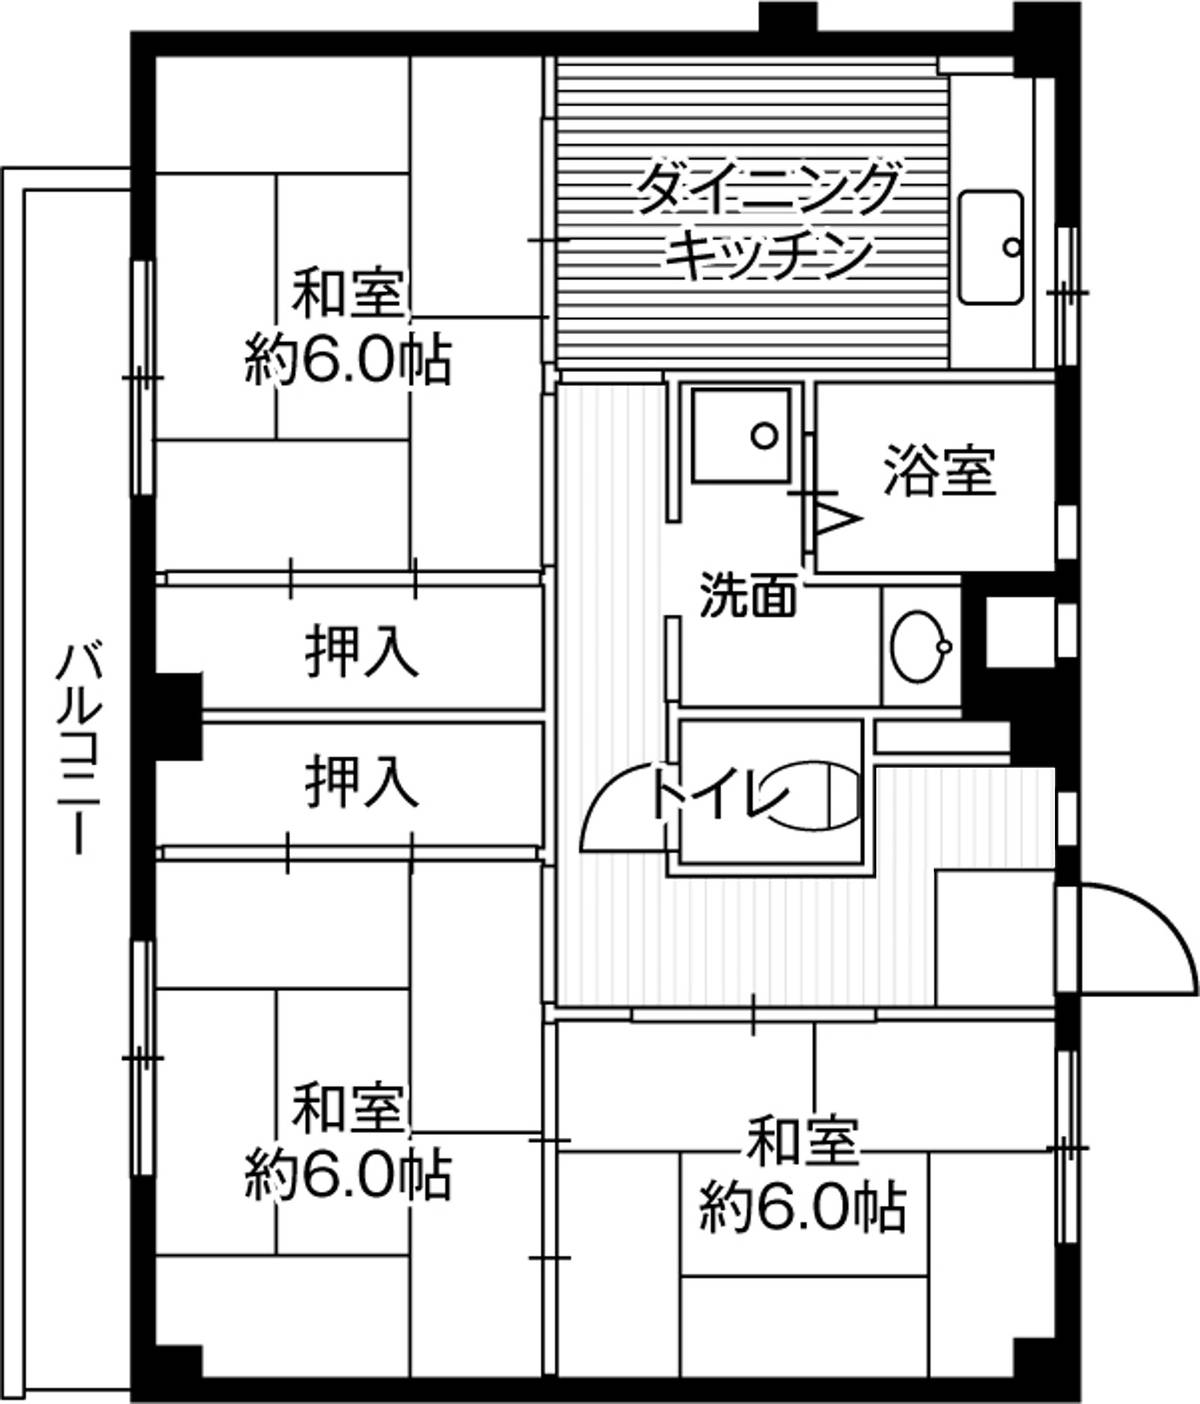 Sơ đồ phòng 3DK của Village House Kushizaki ở Matsudo-shi